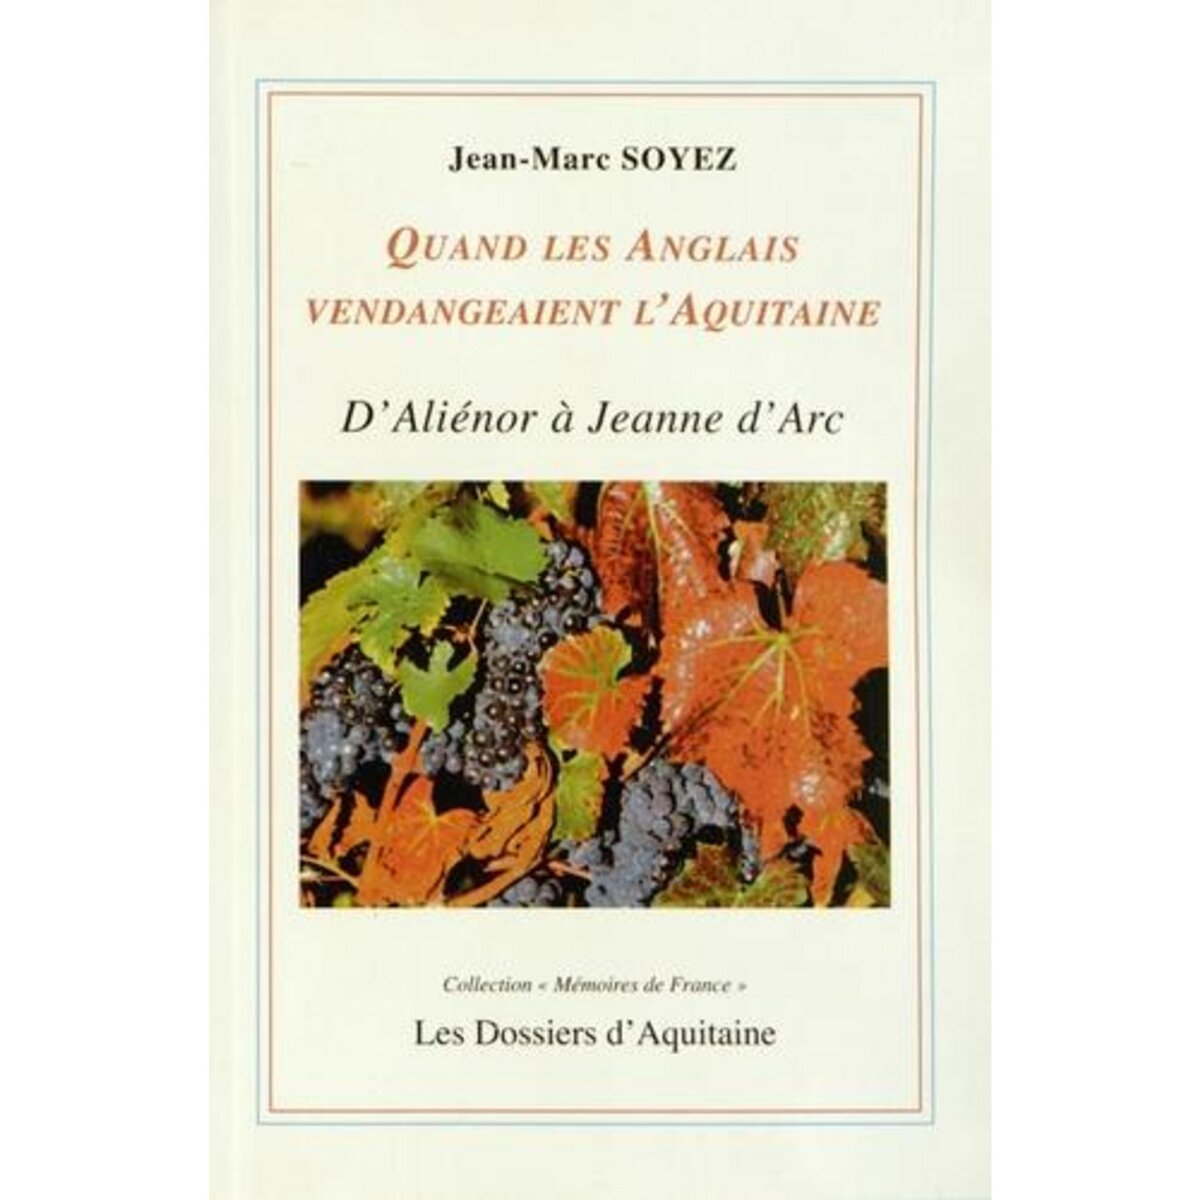  QUAND LES ANGLAIS VENDANGEAIENT L'AQUITAINE. D'ALIENOR D'AQUITAINE A JEANNE D'ARC, Soyez Jean-Marc